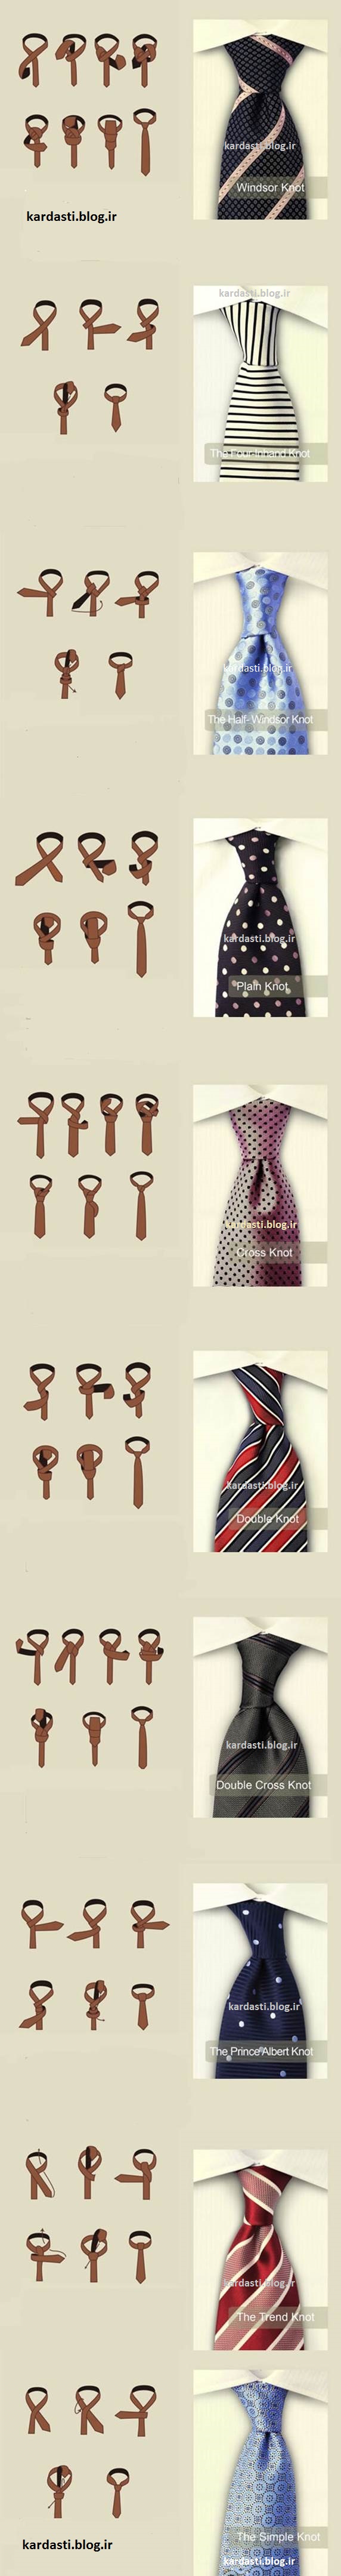 آموزش بستن کراوات با 10 روش مختلف